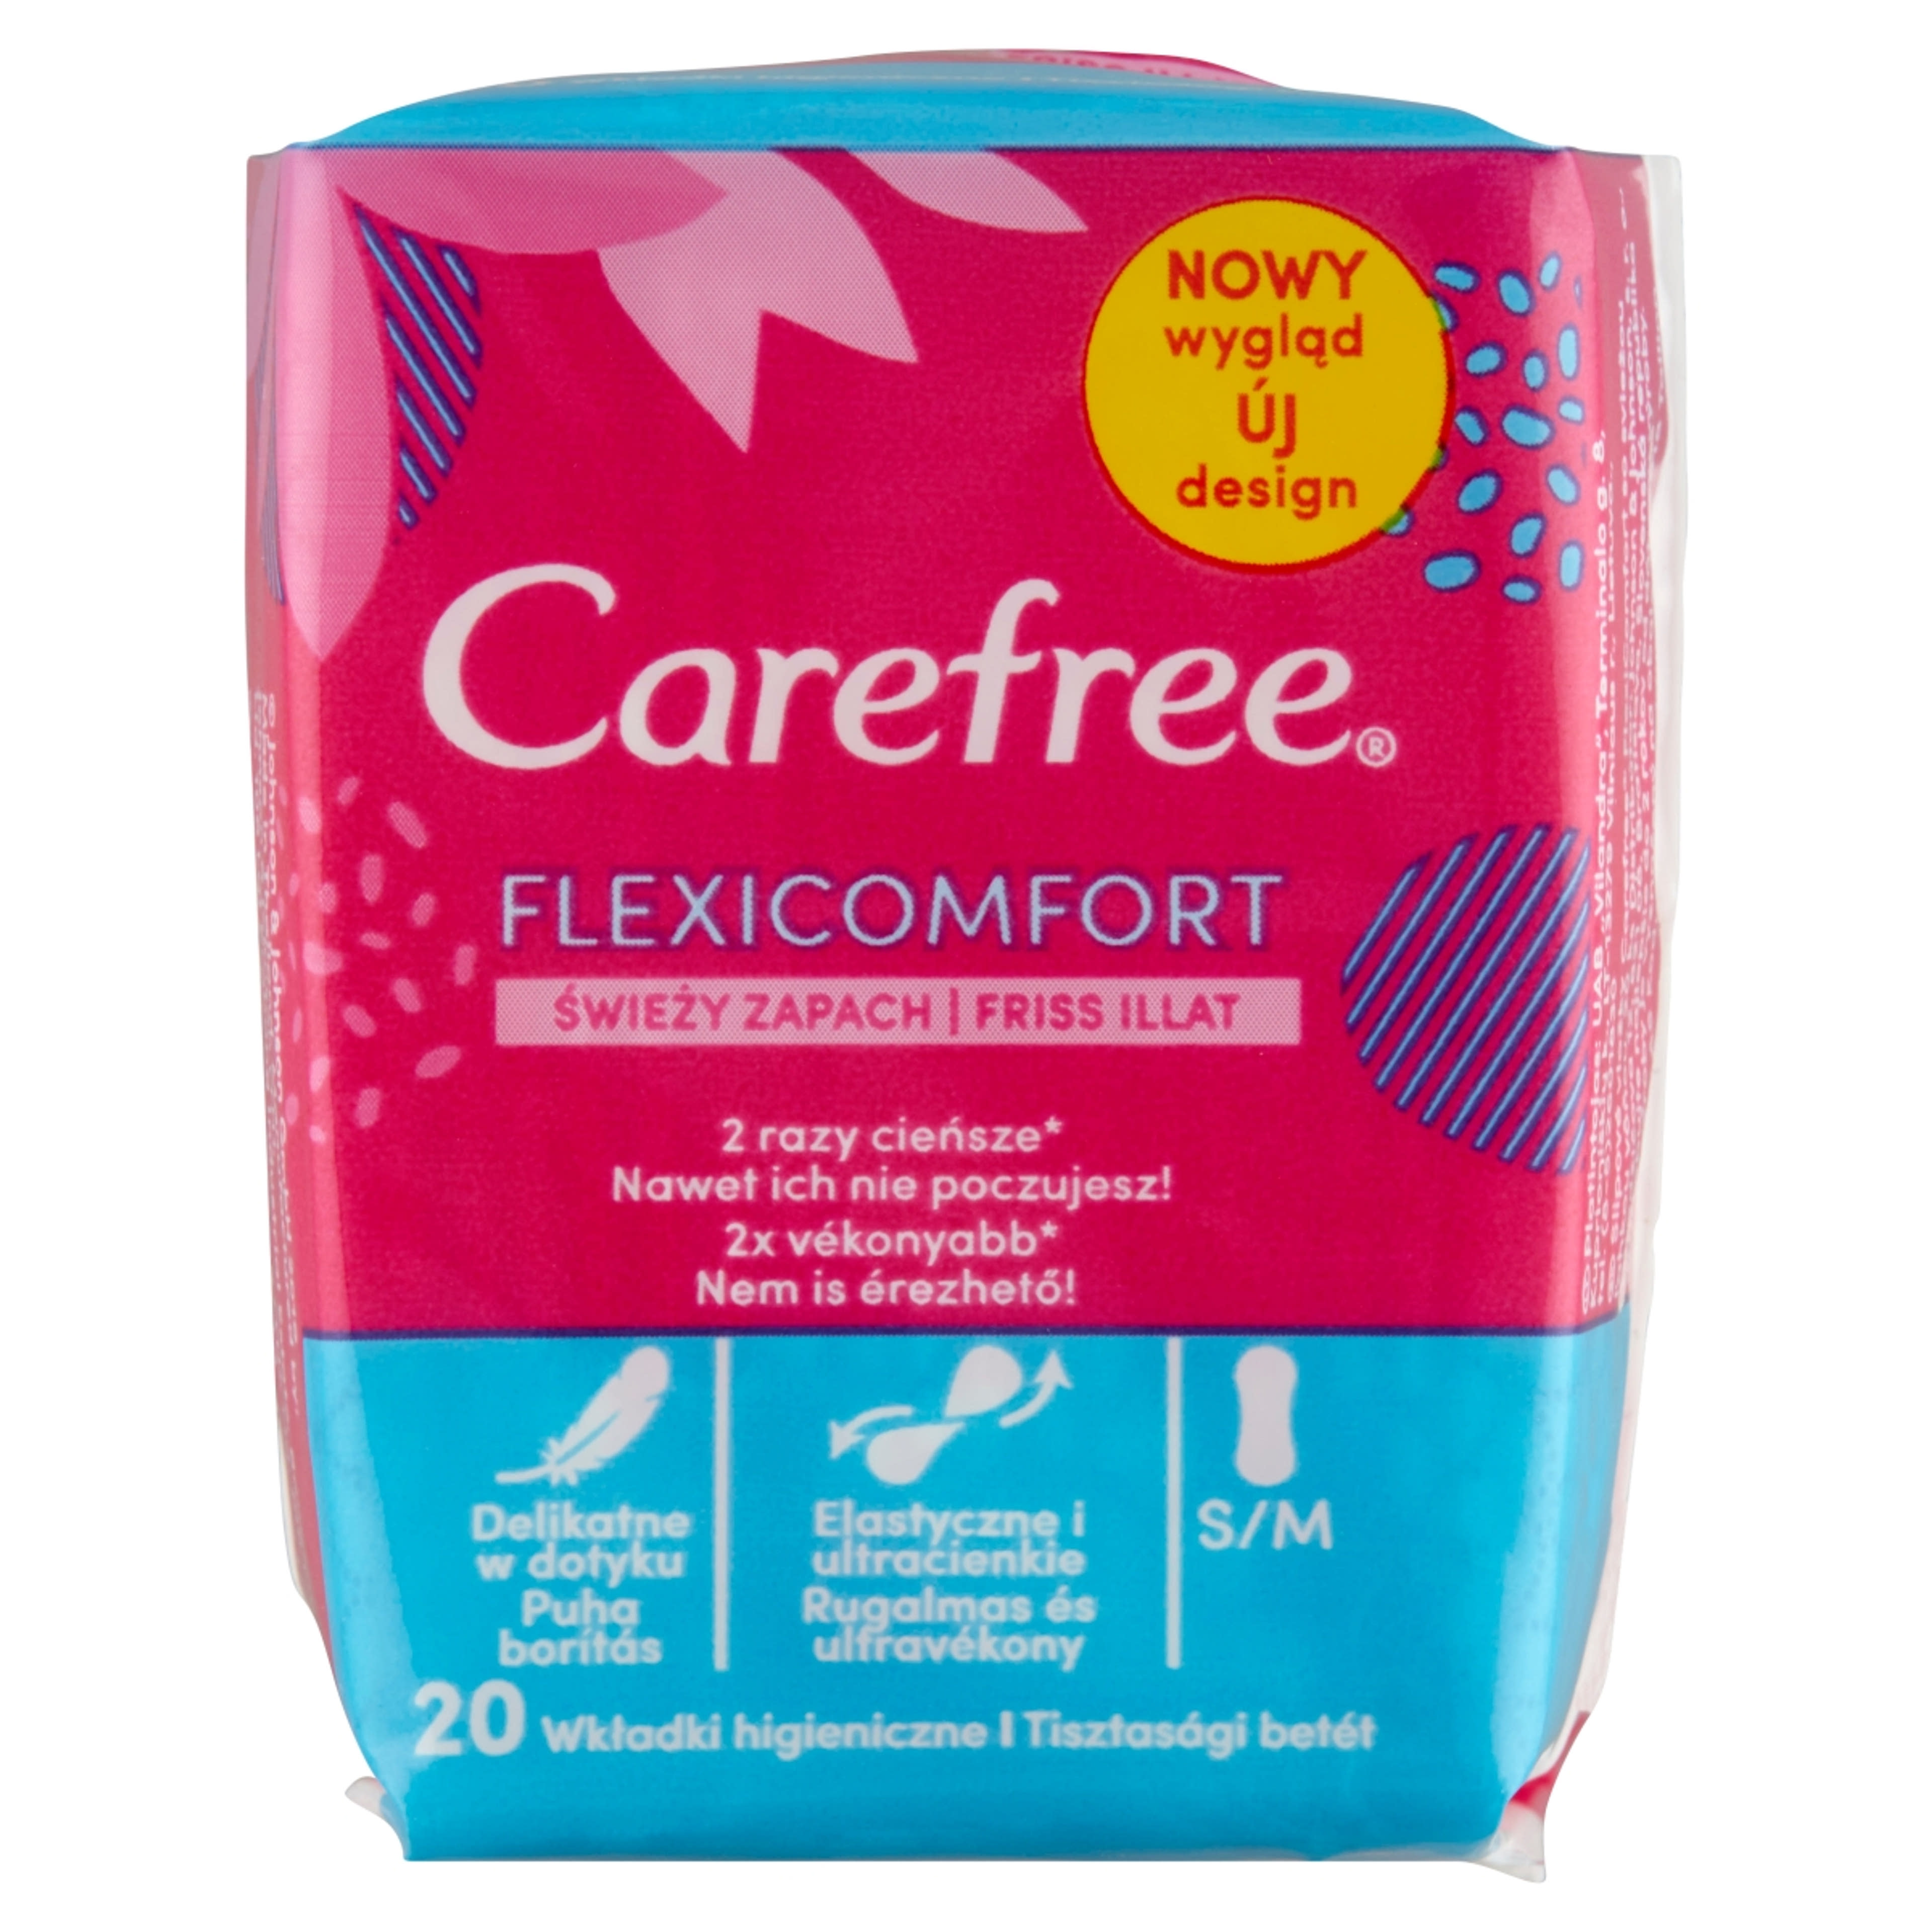 Carefree FlexiComfort tisztasági betét friss illattal - 20 db